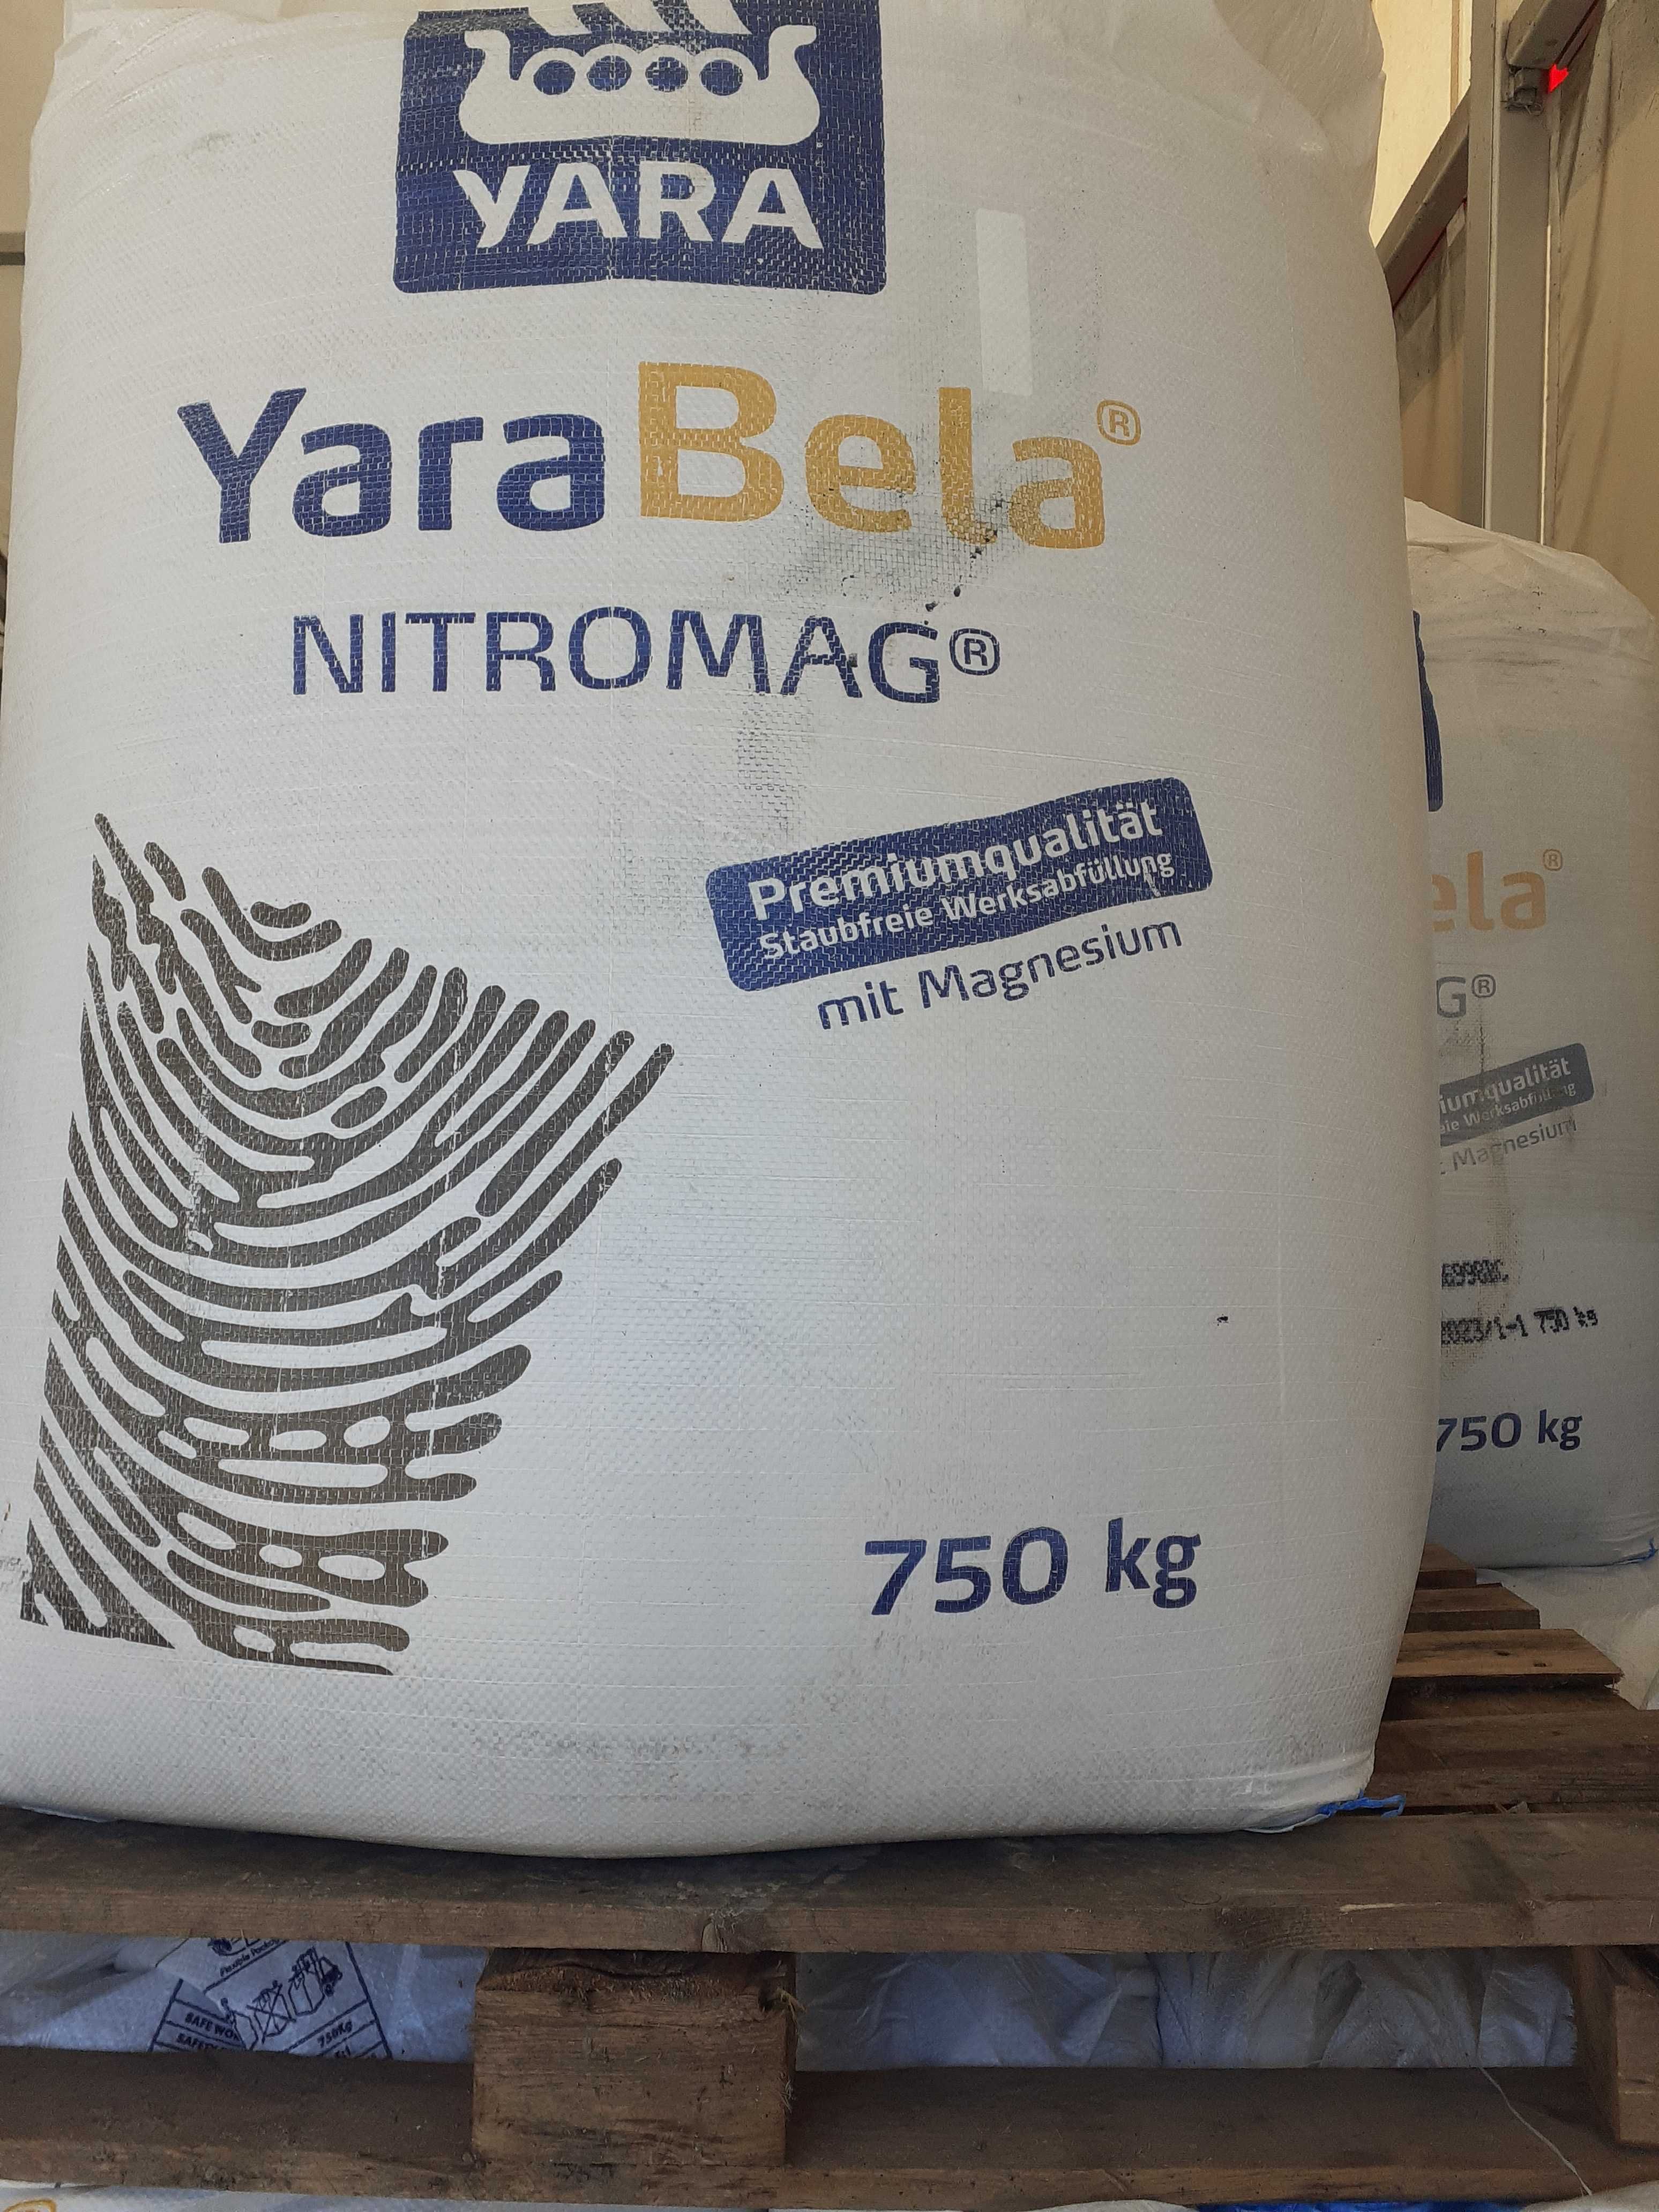 Yara Bella Nitromag, Bialfoska NPK  5-15-30, i inne